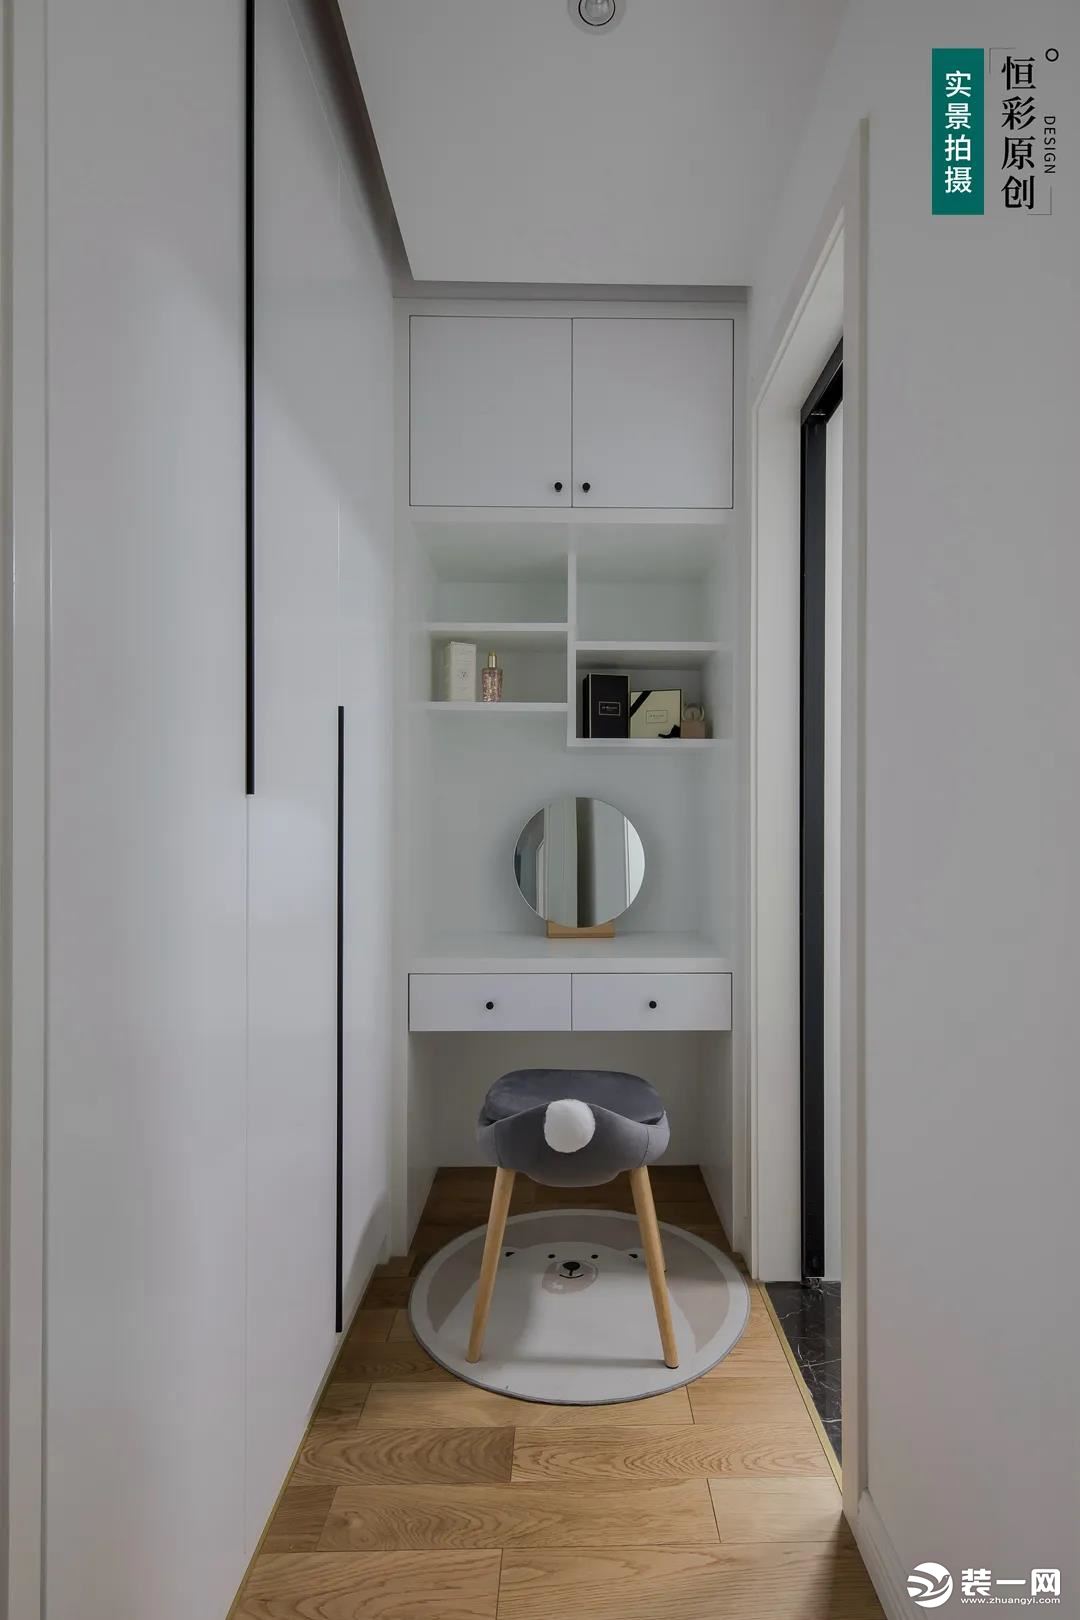 主卧空间涵盖了衣柜、 独立梳妆台、 和主卧卫生间。 利用衣柜隔断， 两面各做柜体， 增加储物功能。 